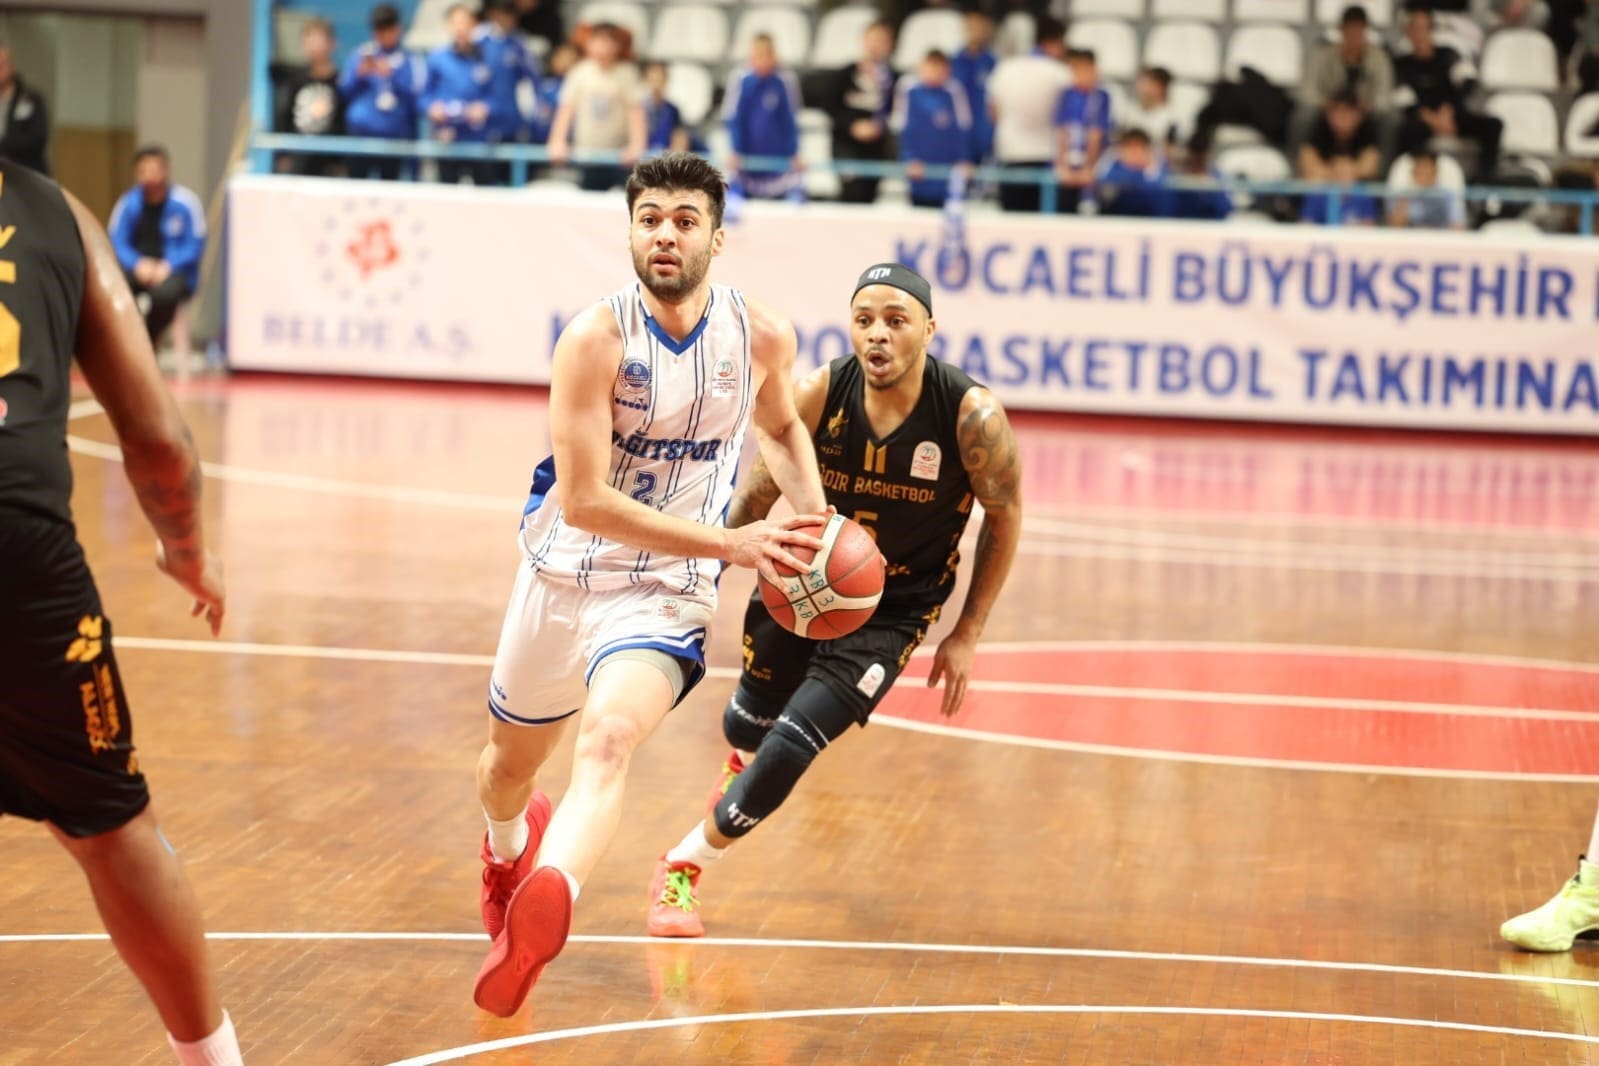 turkiye basketbol ligi kocaeli bsb kagitspor 83 igdir basketbol 68 1 gqXiDwLa